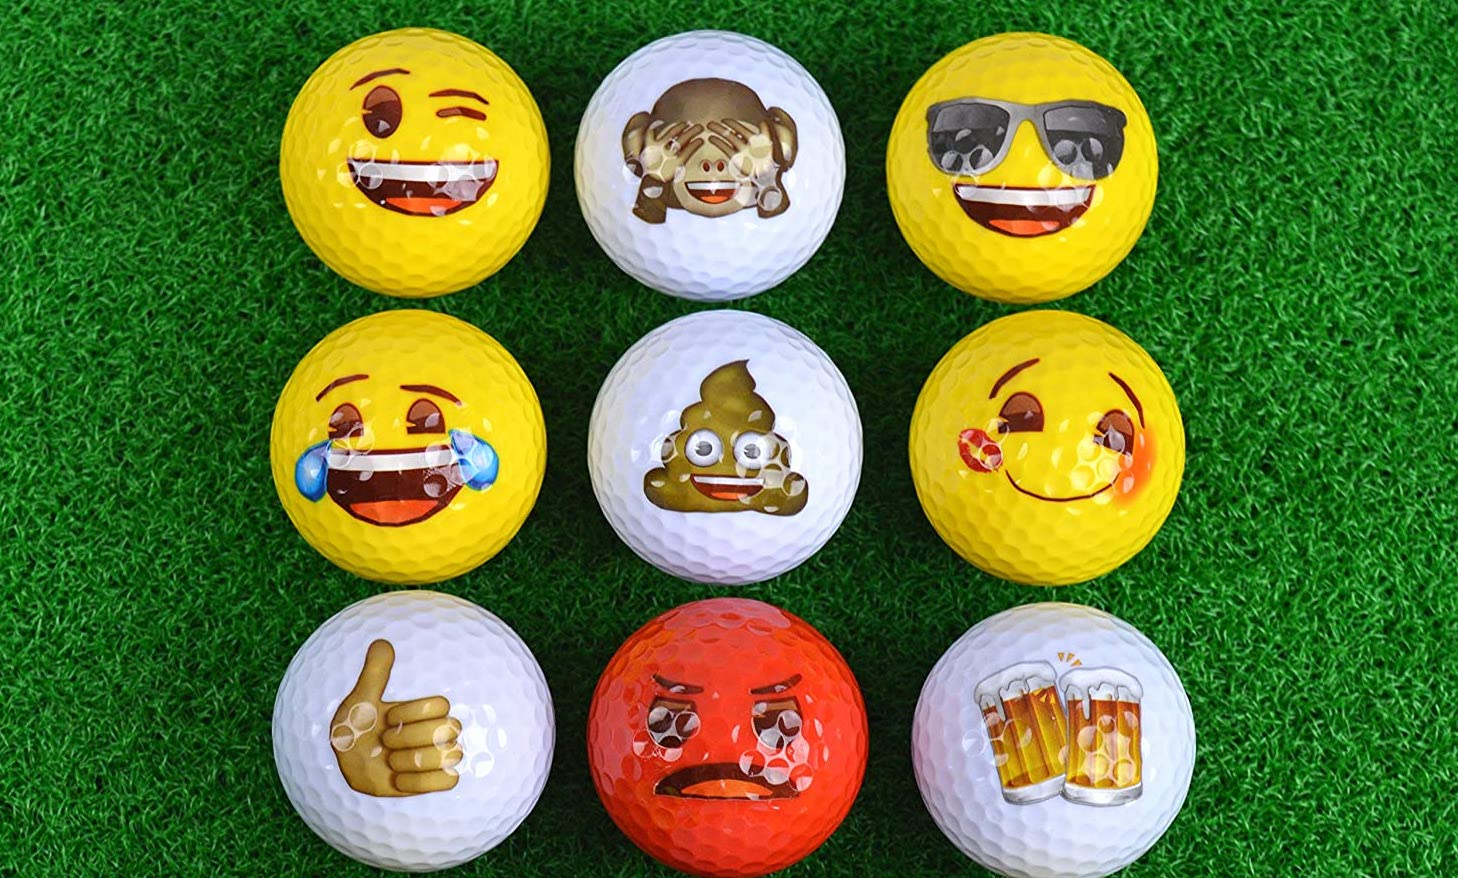 https://www.golfdigest.com/content/dam/images/golfdigest/fullset/2021/emoji-balls.jpeg